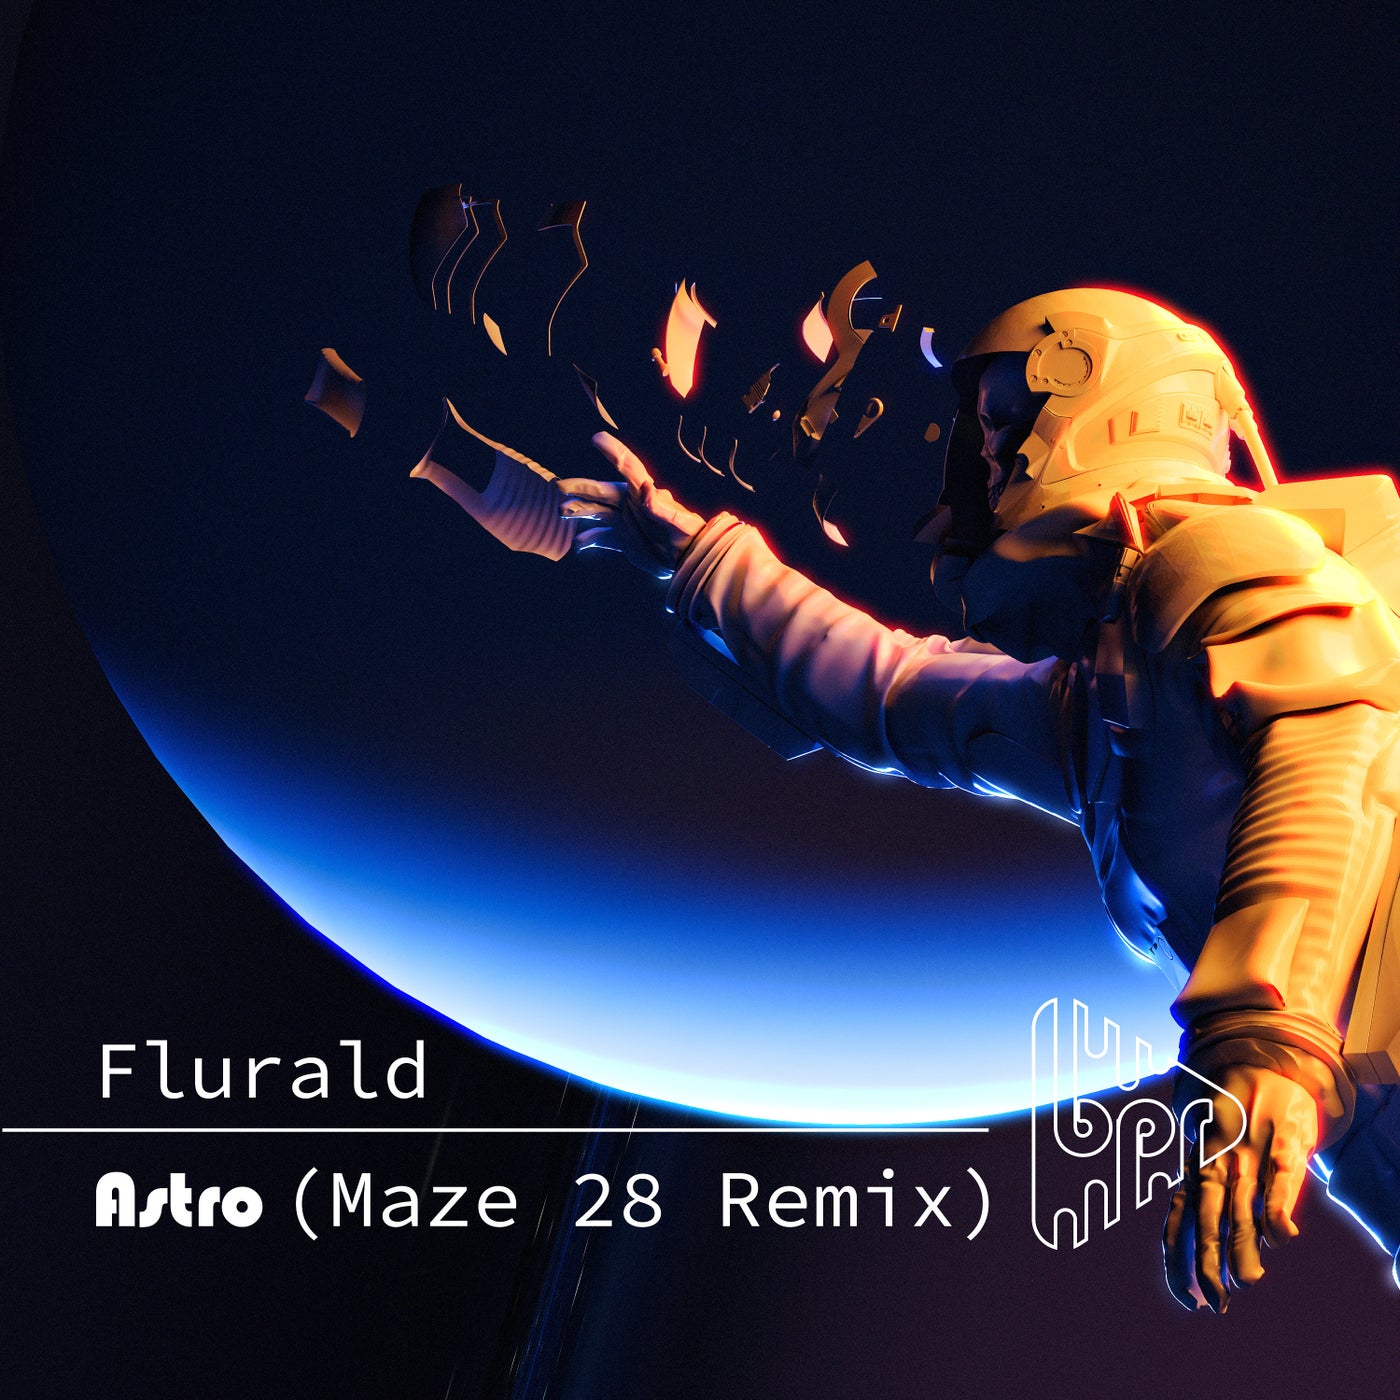 Flurald, Maze 28 – Astro (Maze 28 Remix) [BPR058]